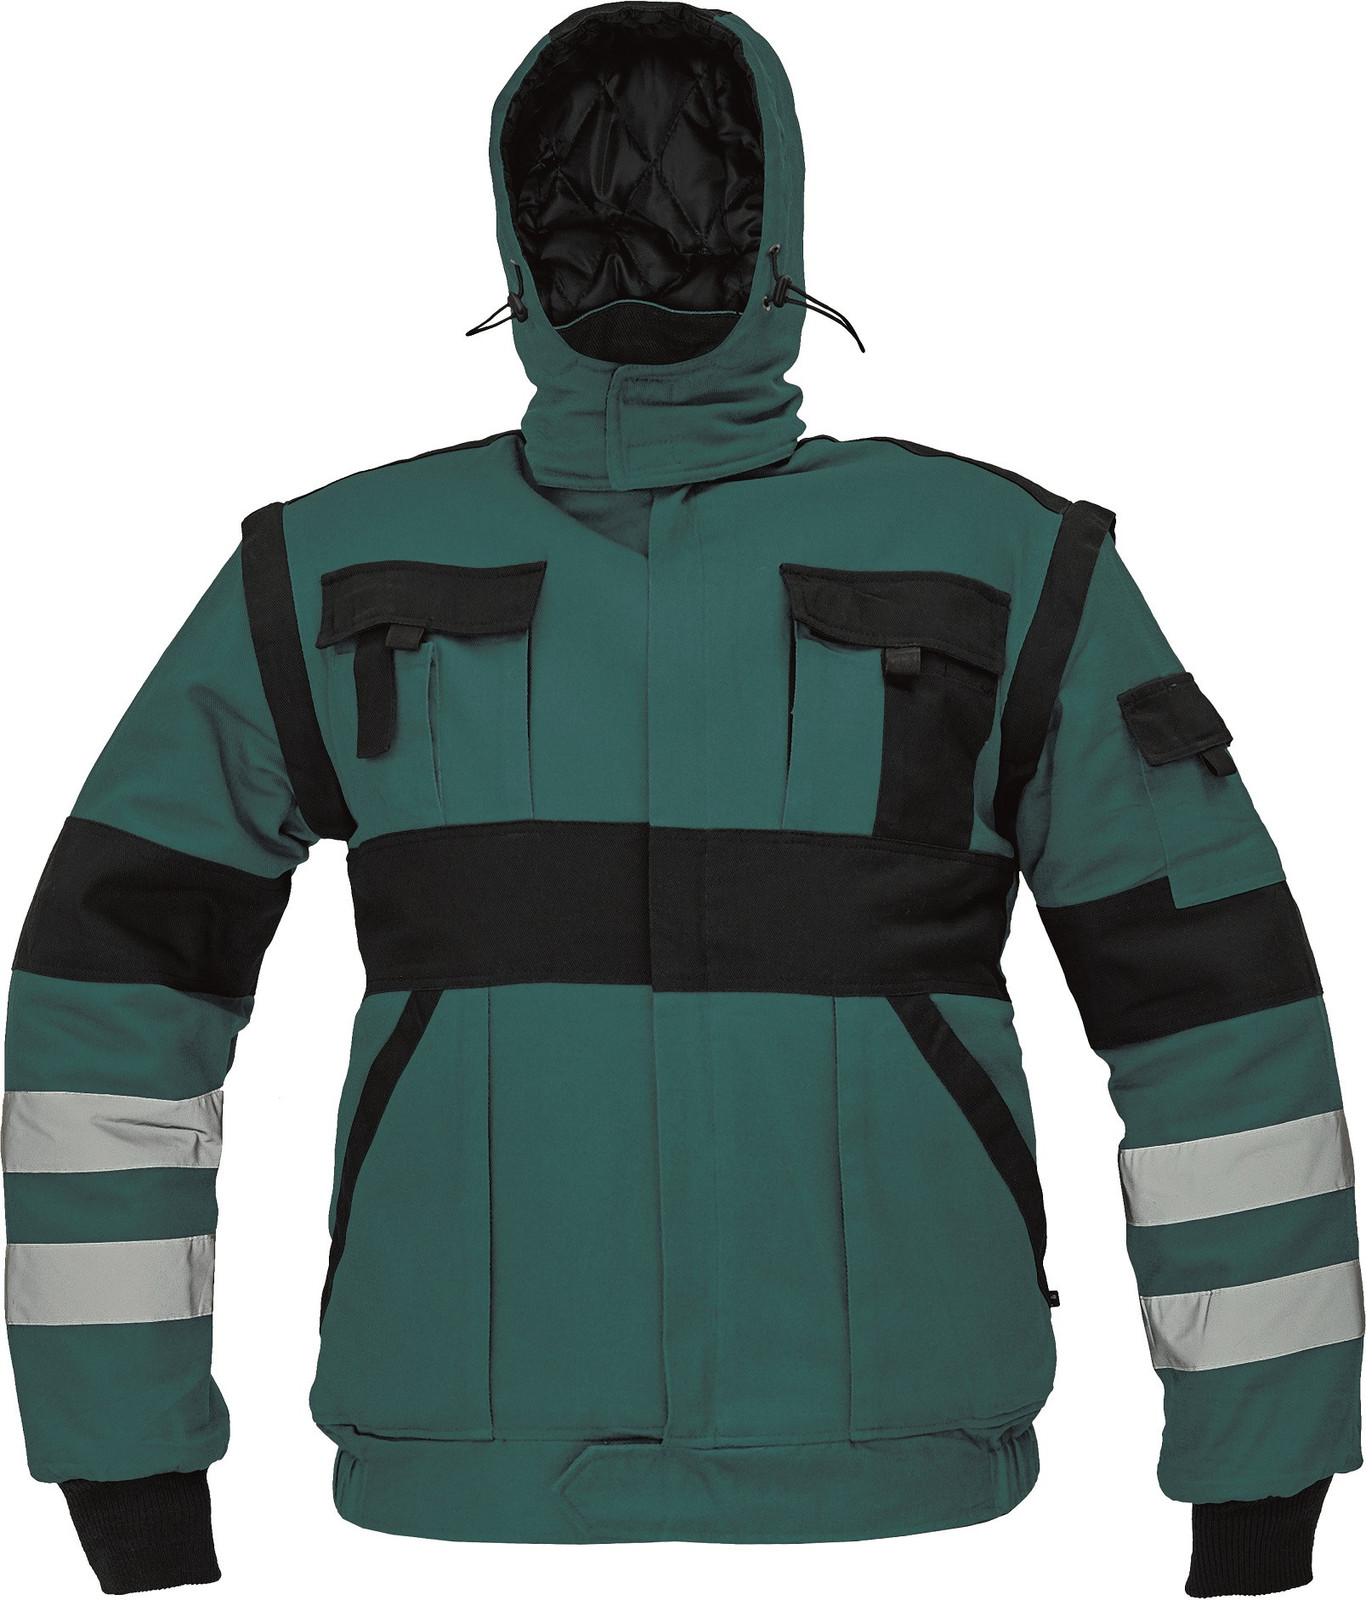 Zateplená montérková bunda Max Winter s reflexnými pruhmi 2v1 - veľkosť: 46, farba: zelená/čierna